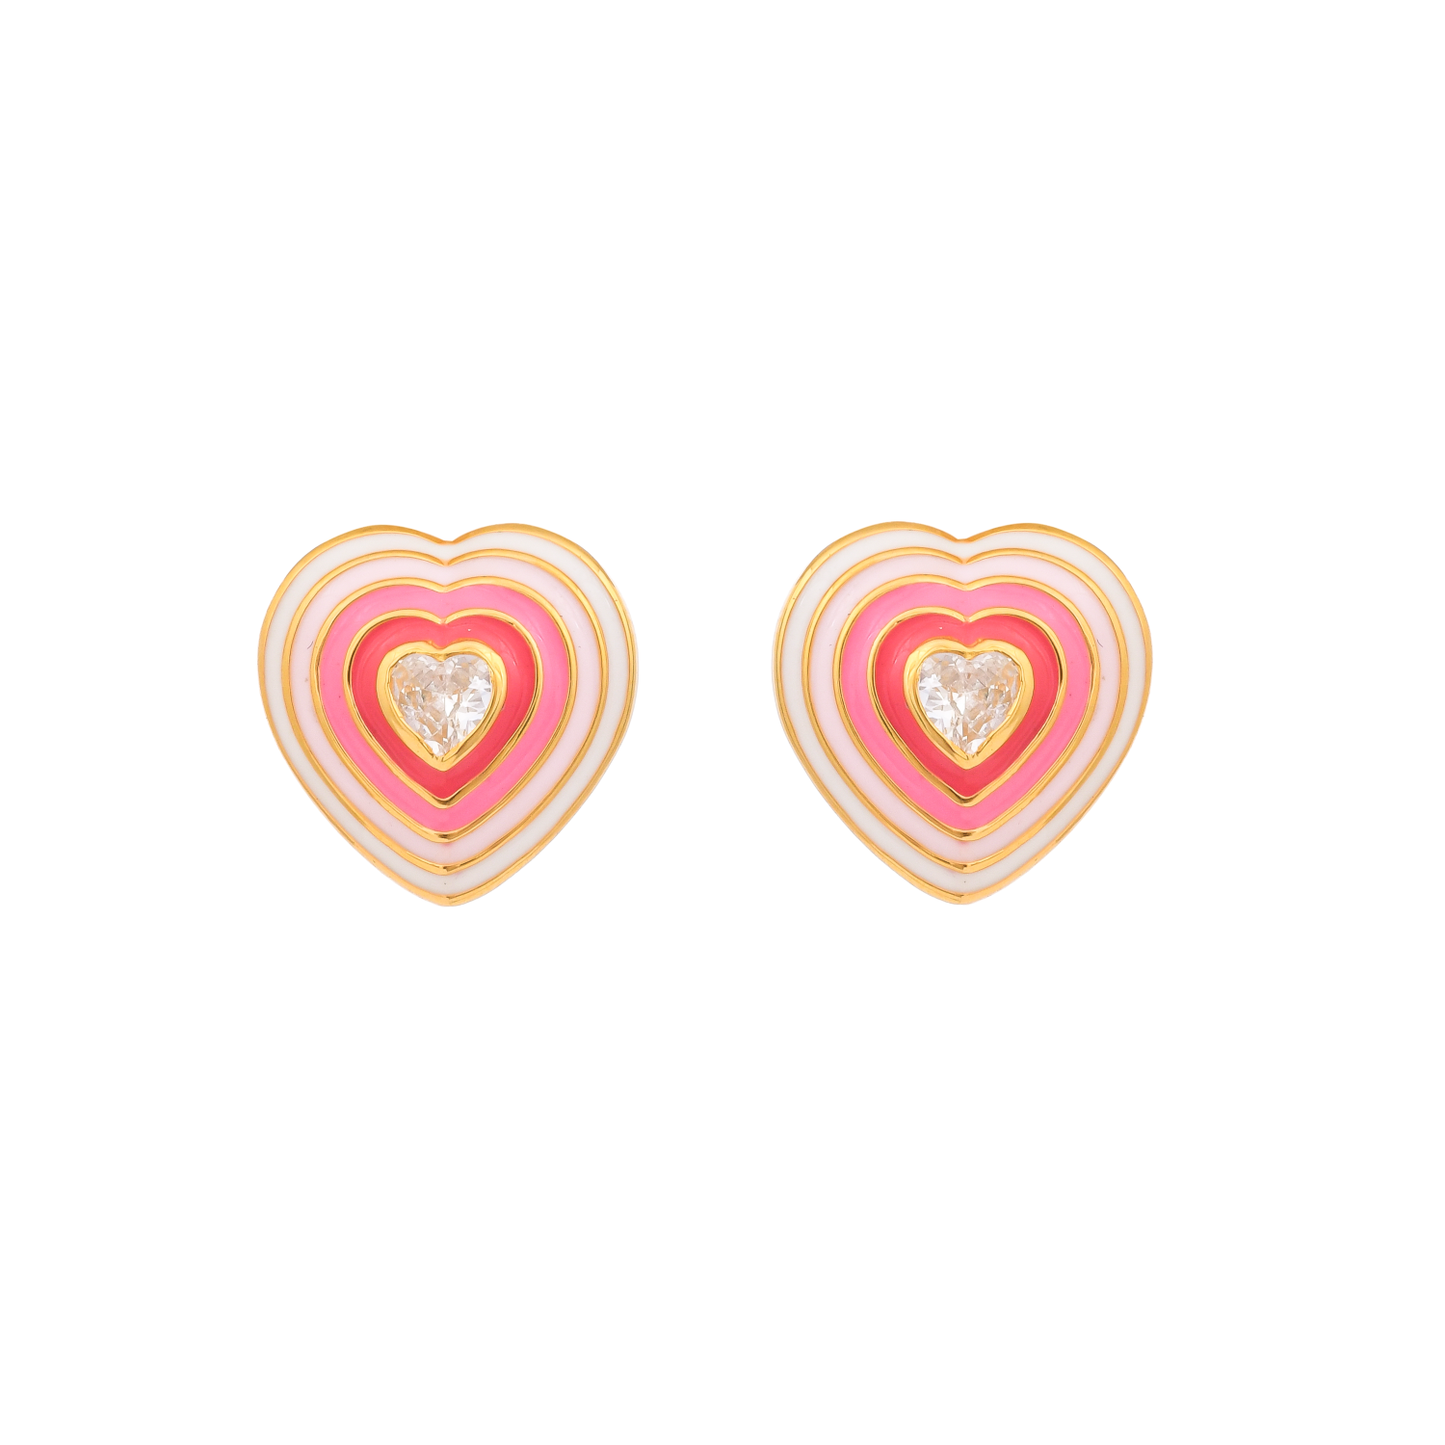 Bianca Pop Heart Earrings